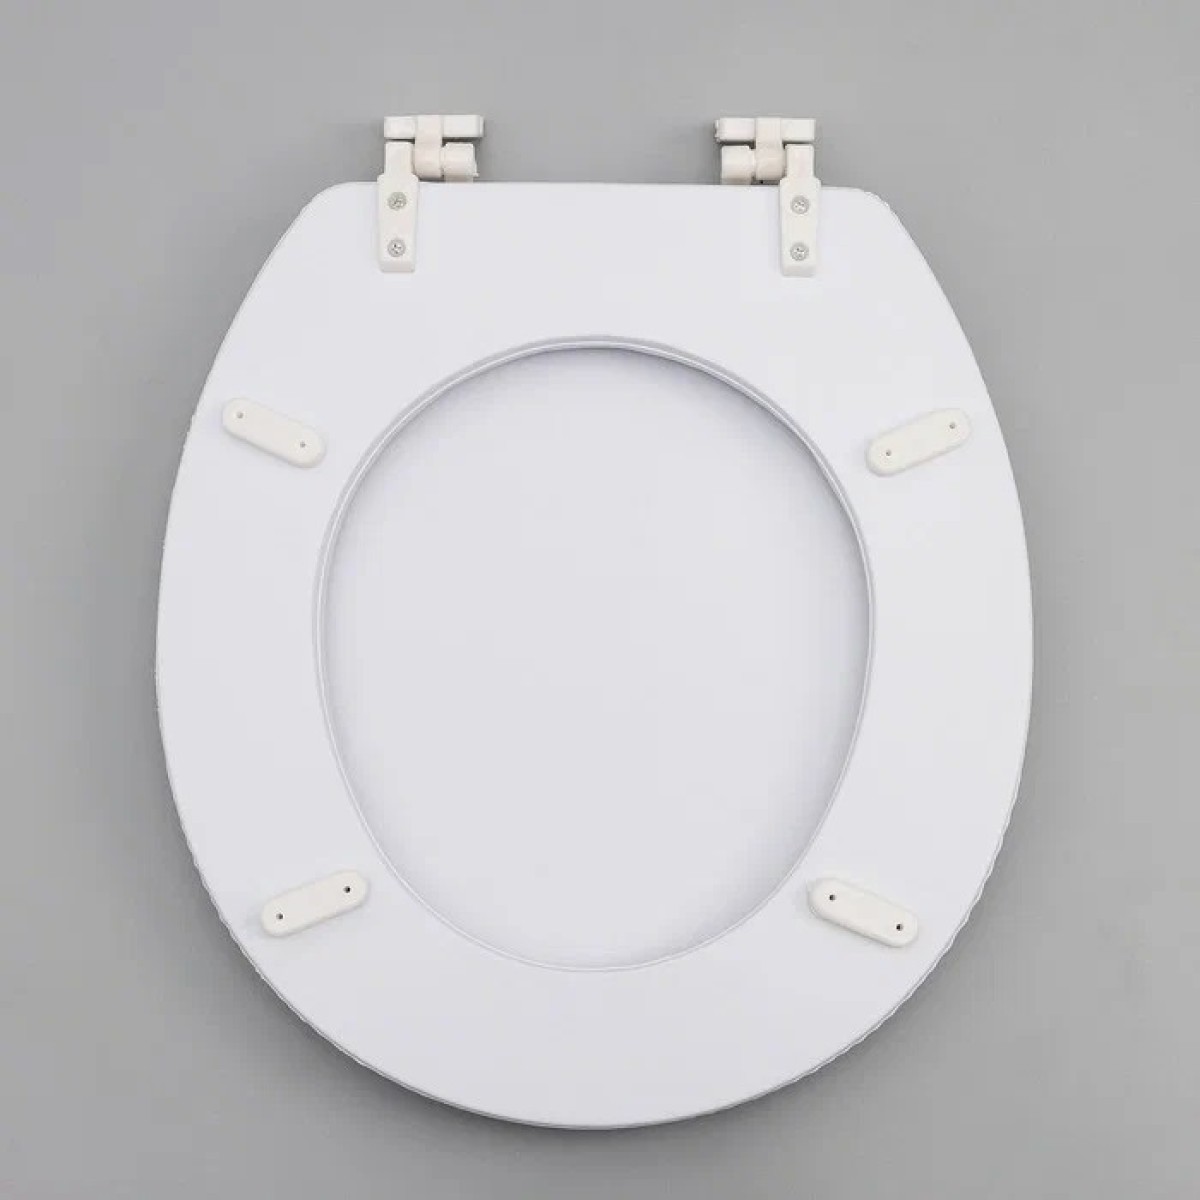 Κάλυμμα-Καπάκι λεκάνης τουαλέτας - Soft PVC - 80223